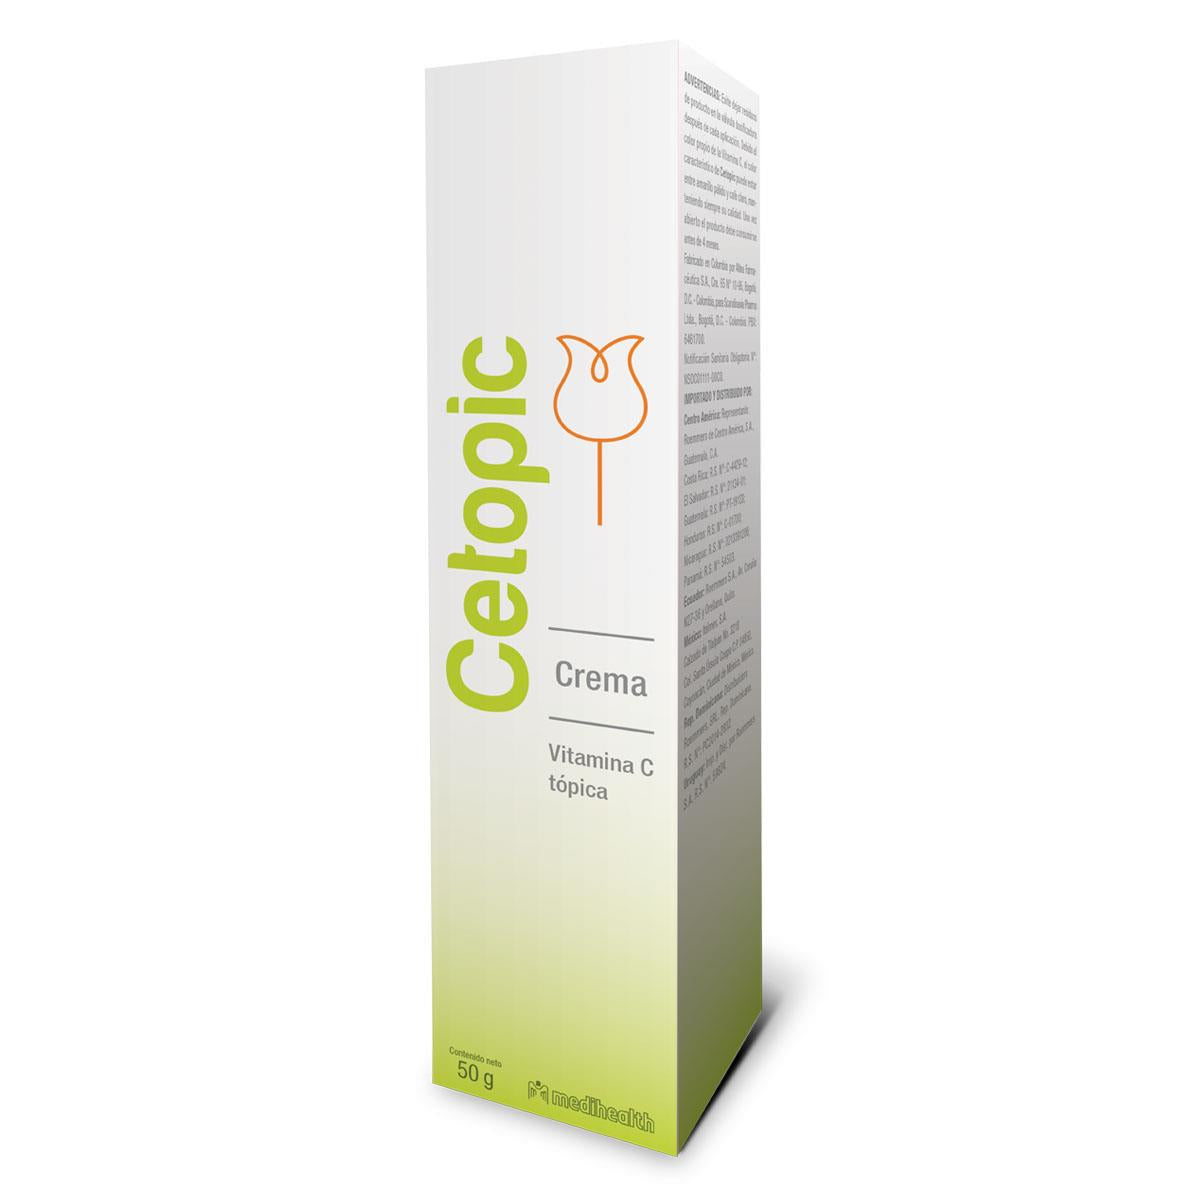 Italmex Cetopic crema antioxidante 50 gr.